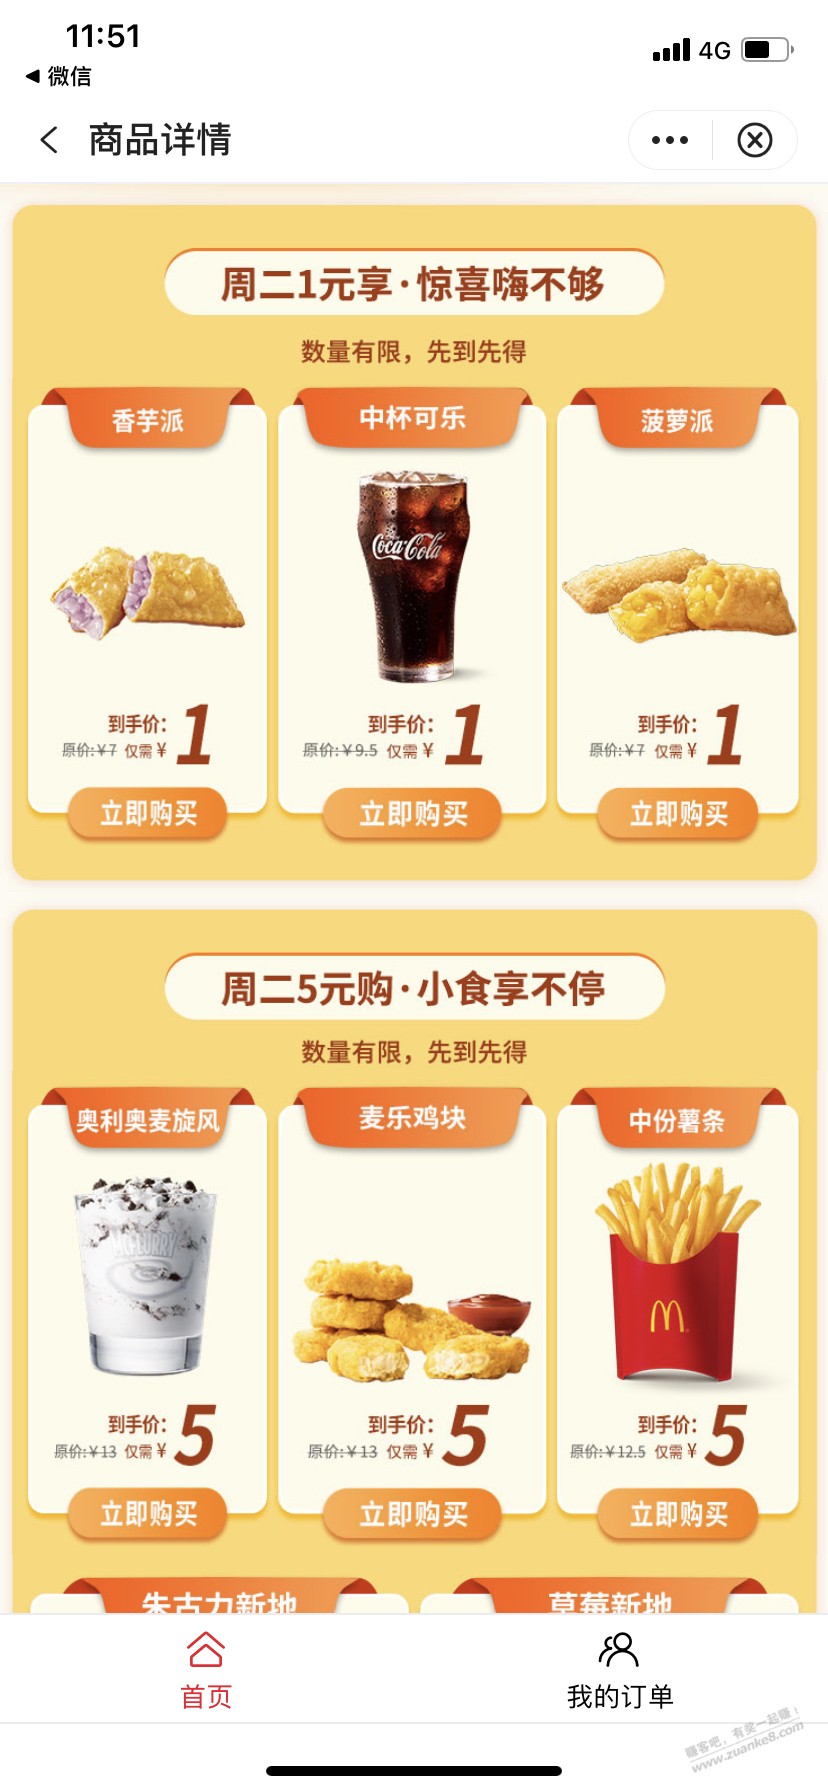 中行1元购 麦当劳香芋菠萝可乐-惠小助(52huixz.com)